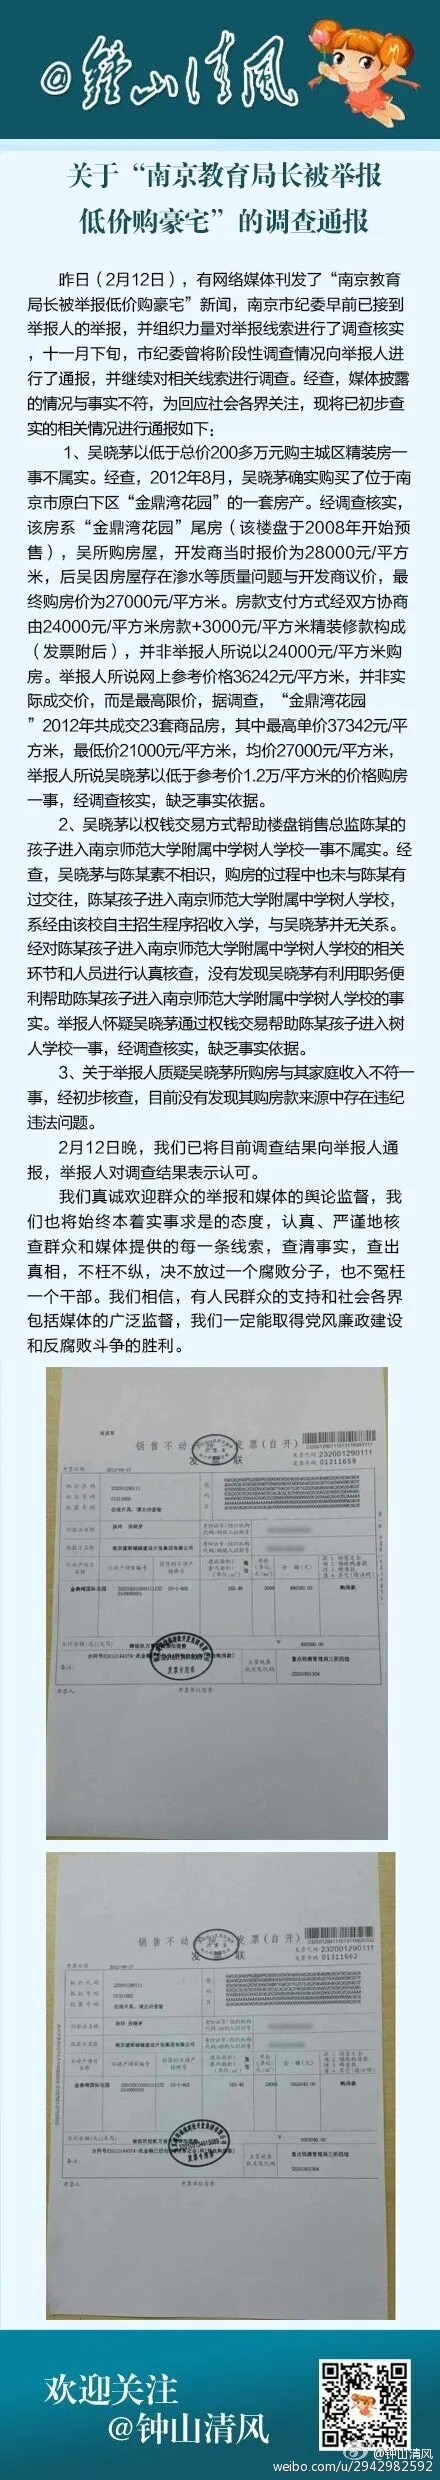 南京教育局长吴晓茅遭举报低价购买豪宅 纪委调查通报